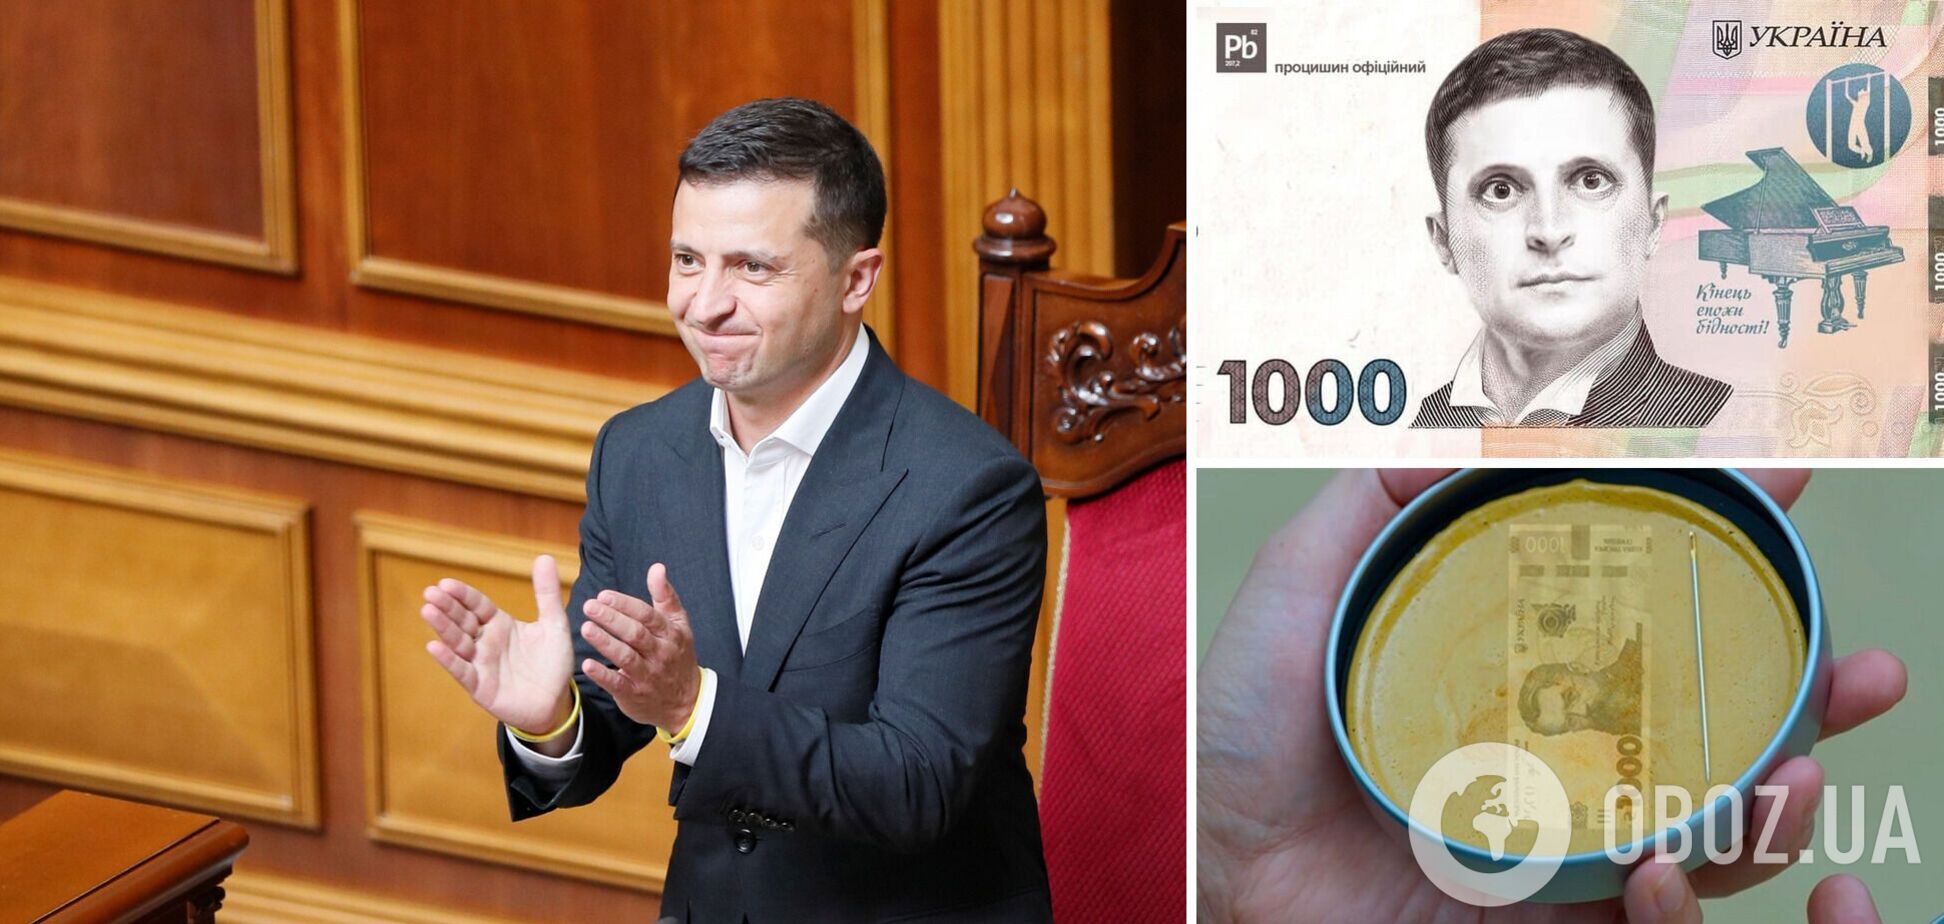 'Вовина тысяча' для вакцинированных: украинцы потроллили инициативу Зеленского. Фото